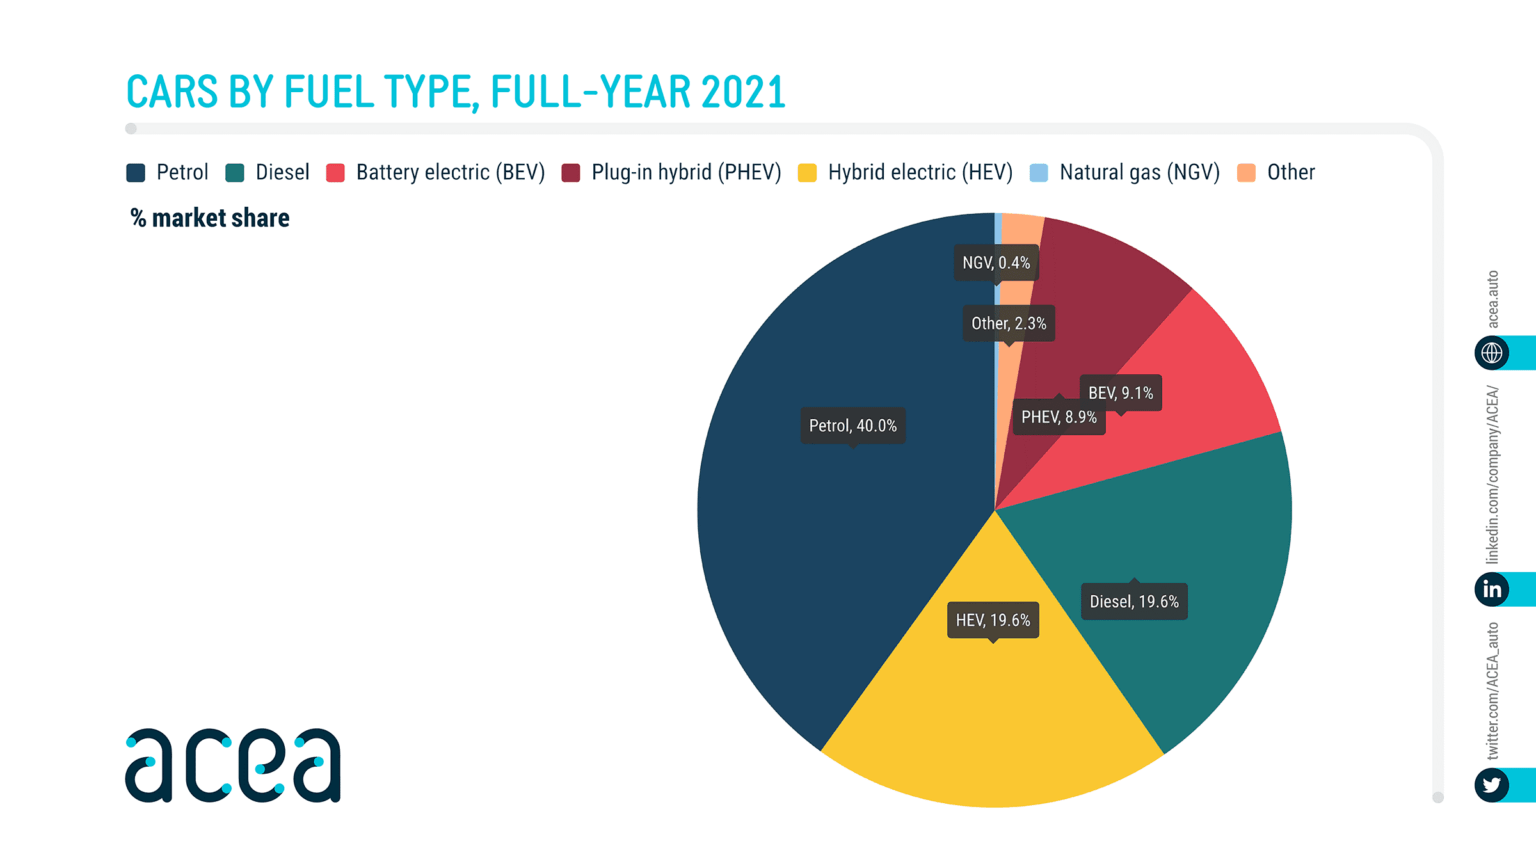 Infografika acea o podílu automobilů na trhu podle typu paliva v roce 2021